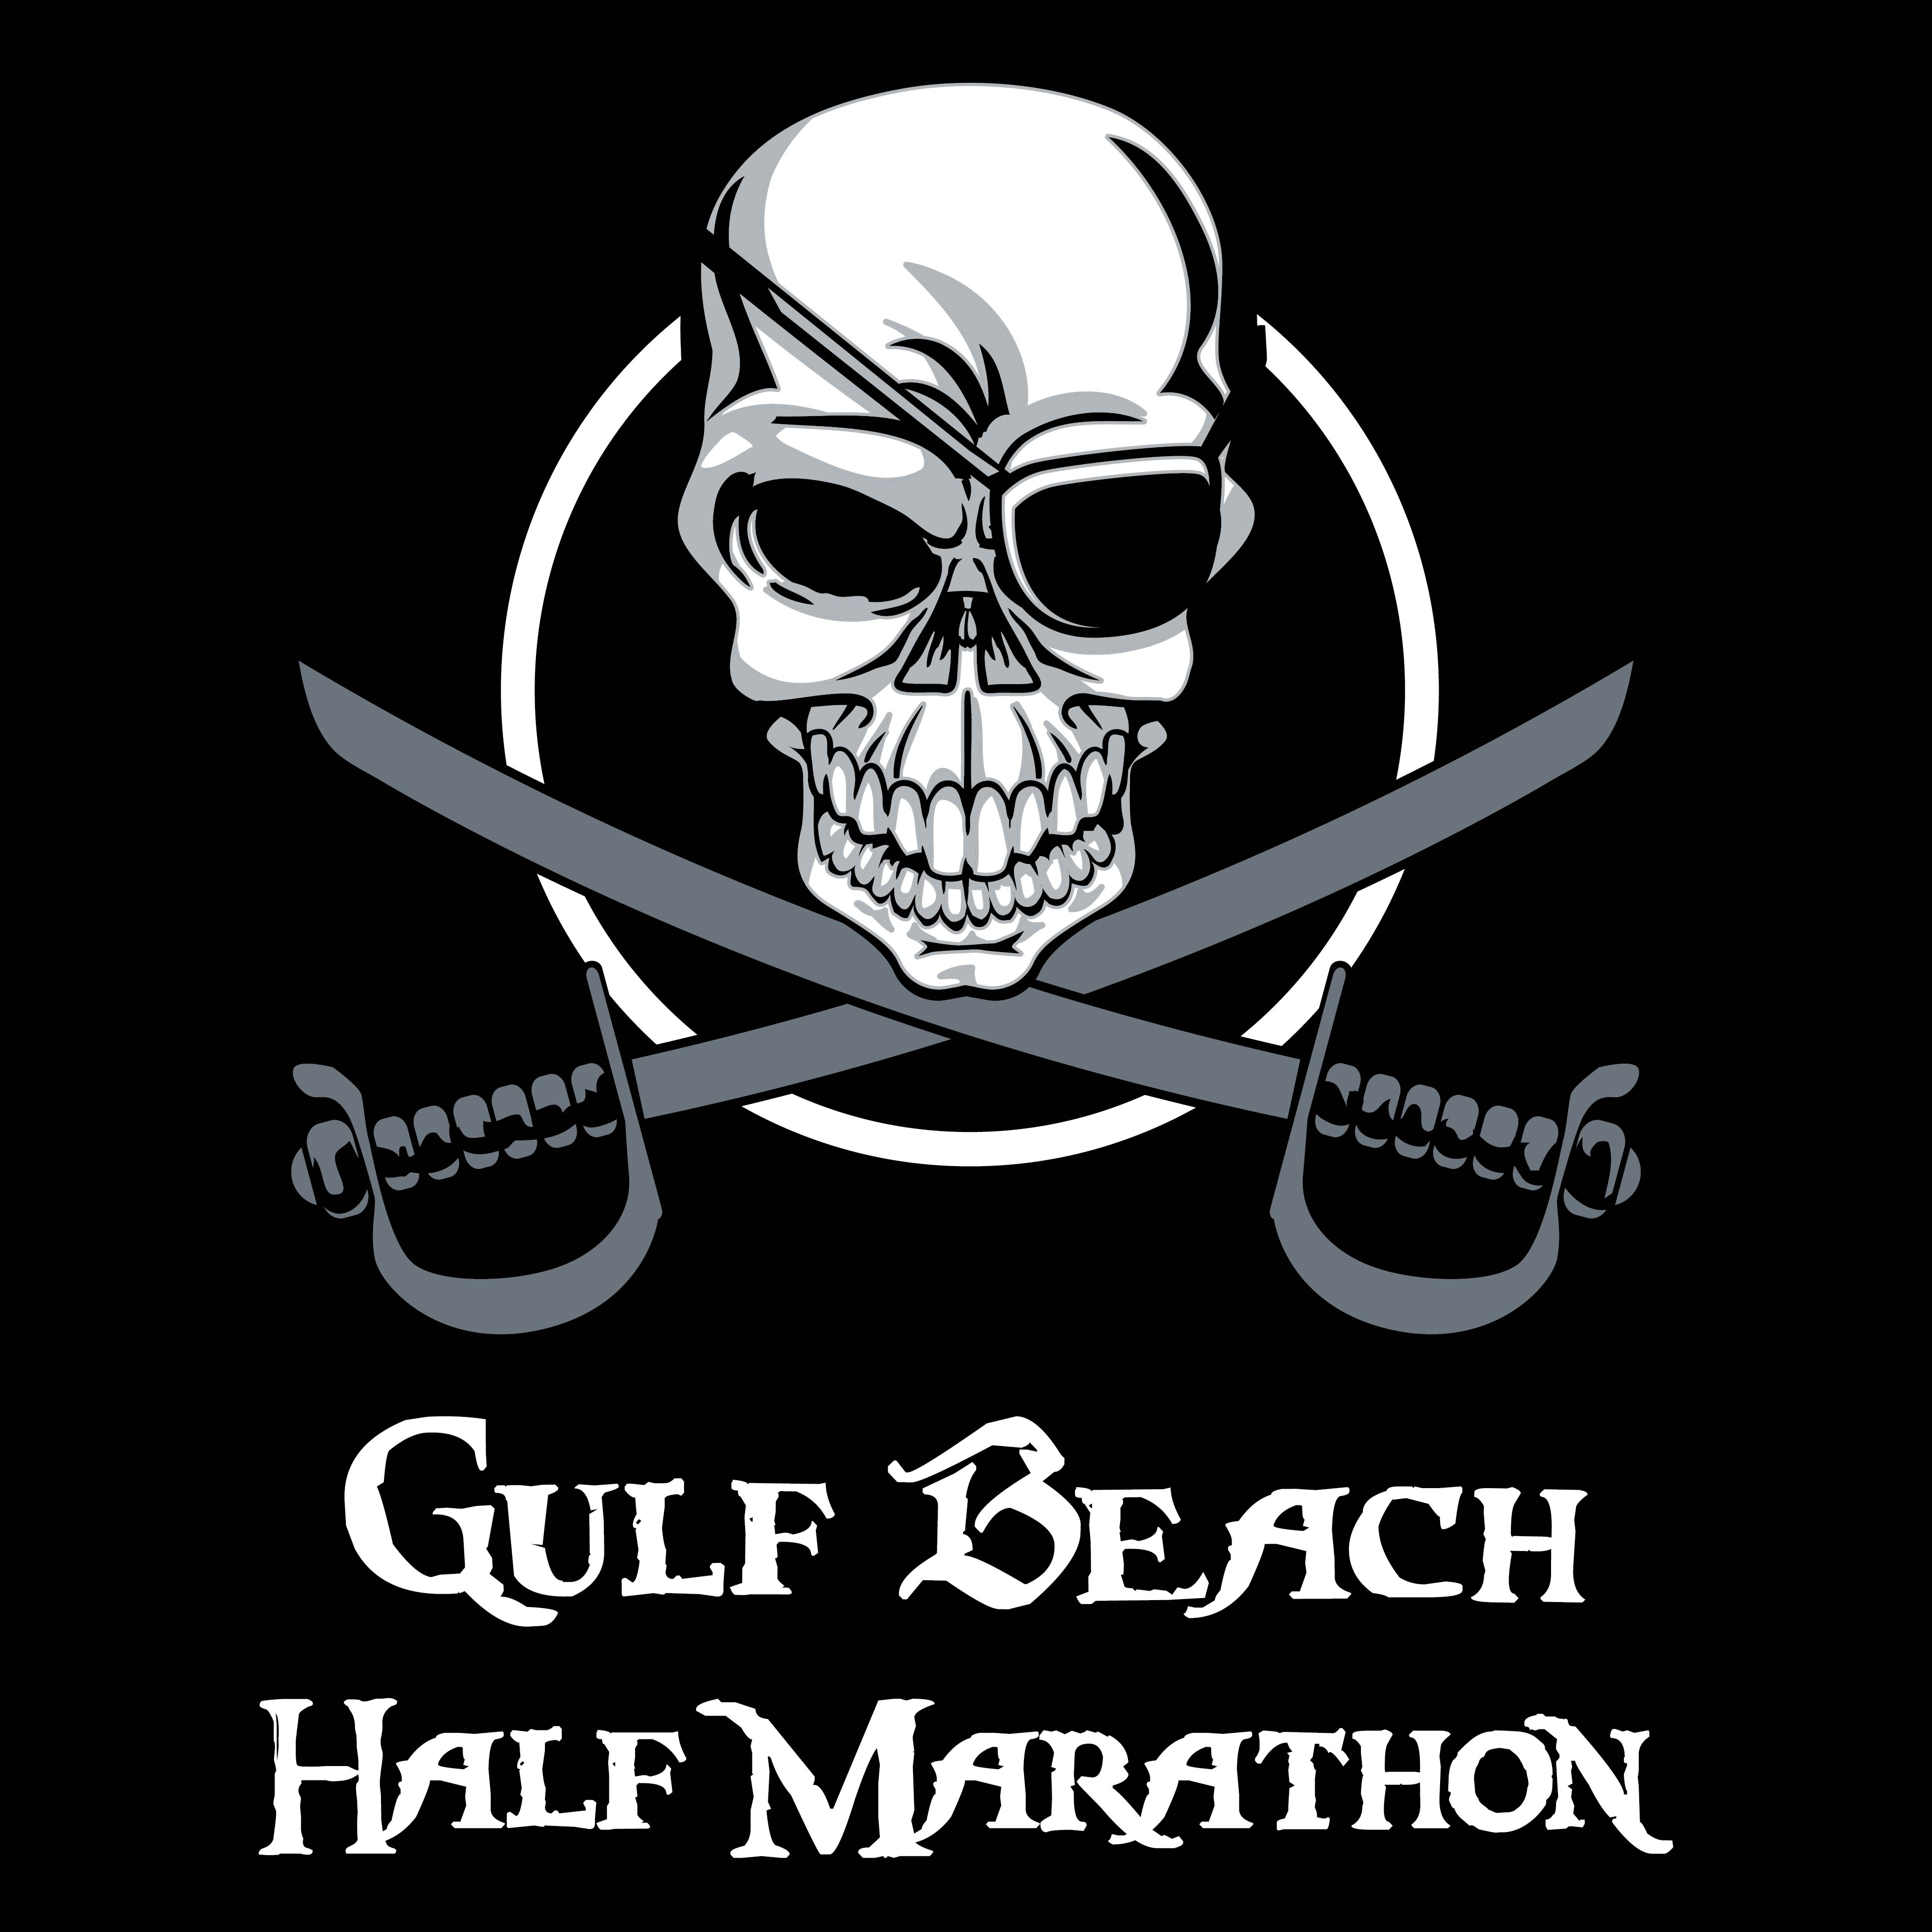 10th Annual Gulf Beach Half Marathon RunnersPlan